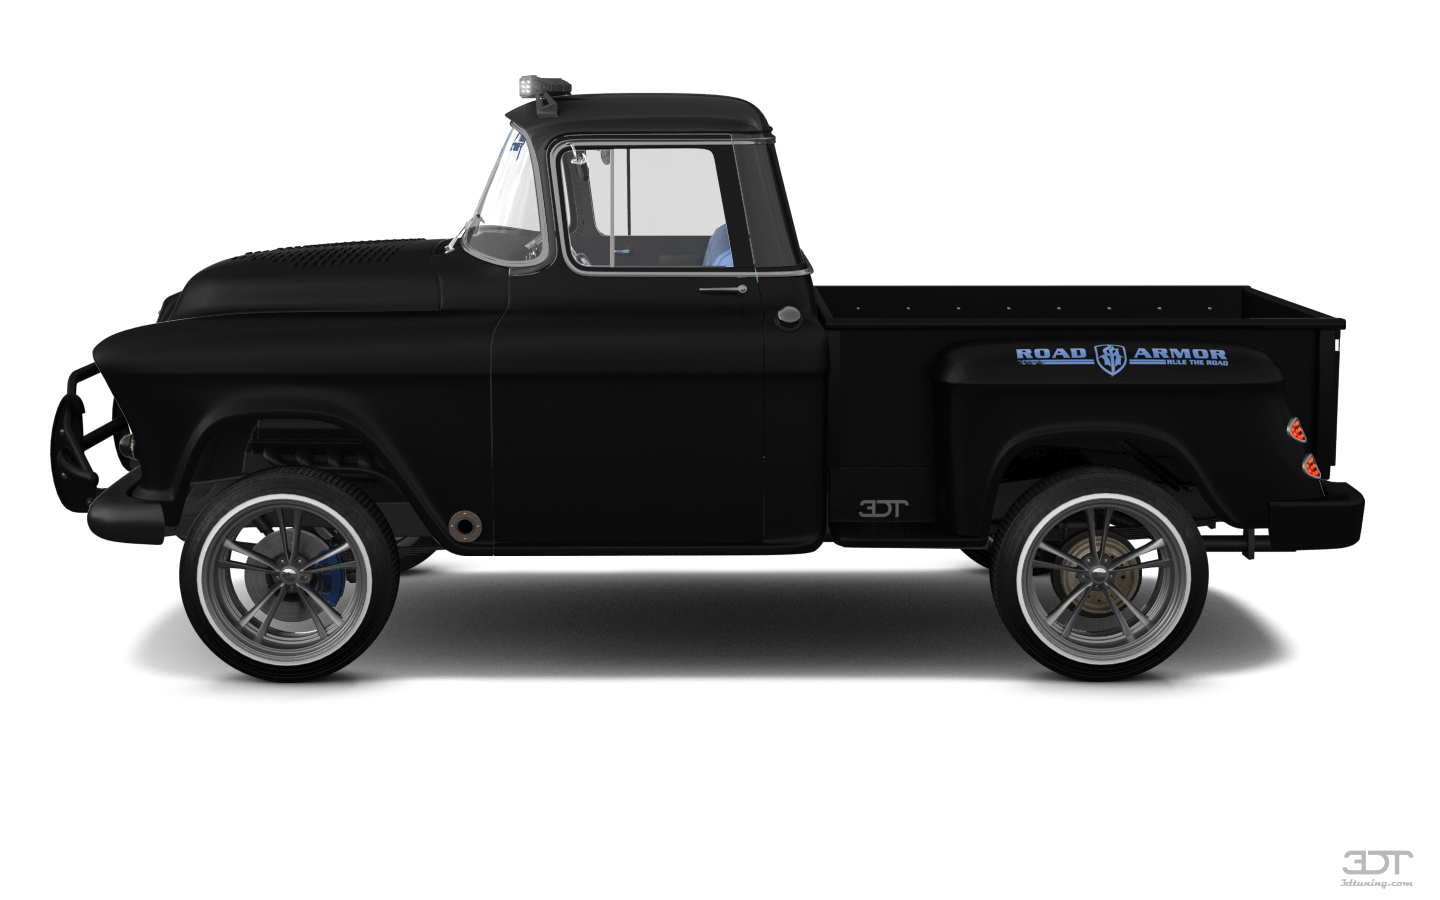 Chevrolet 3100 2 Door pickup truck 1955